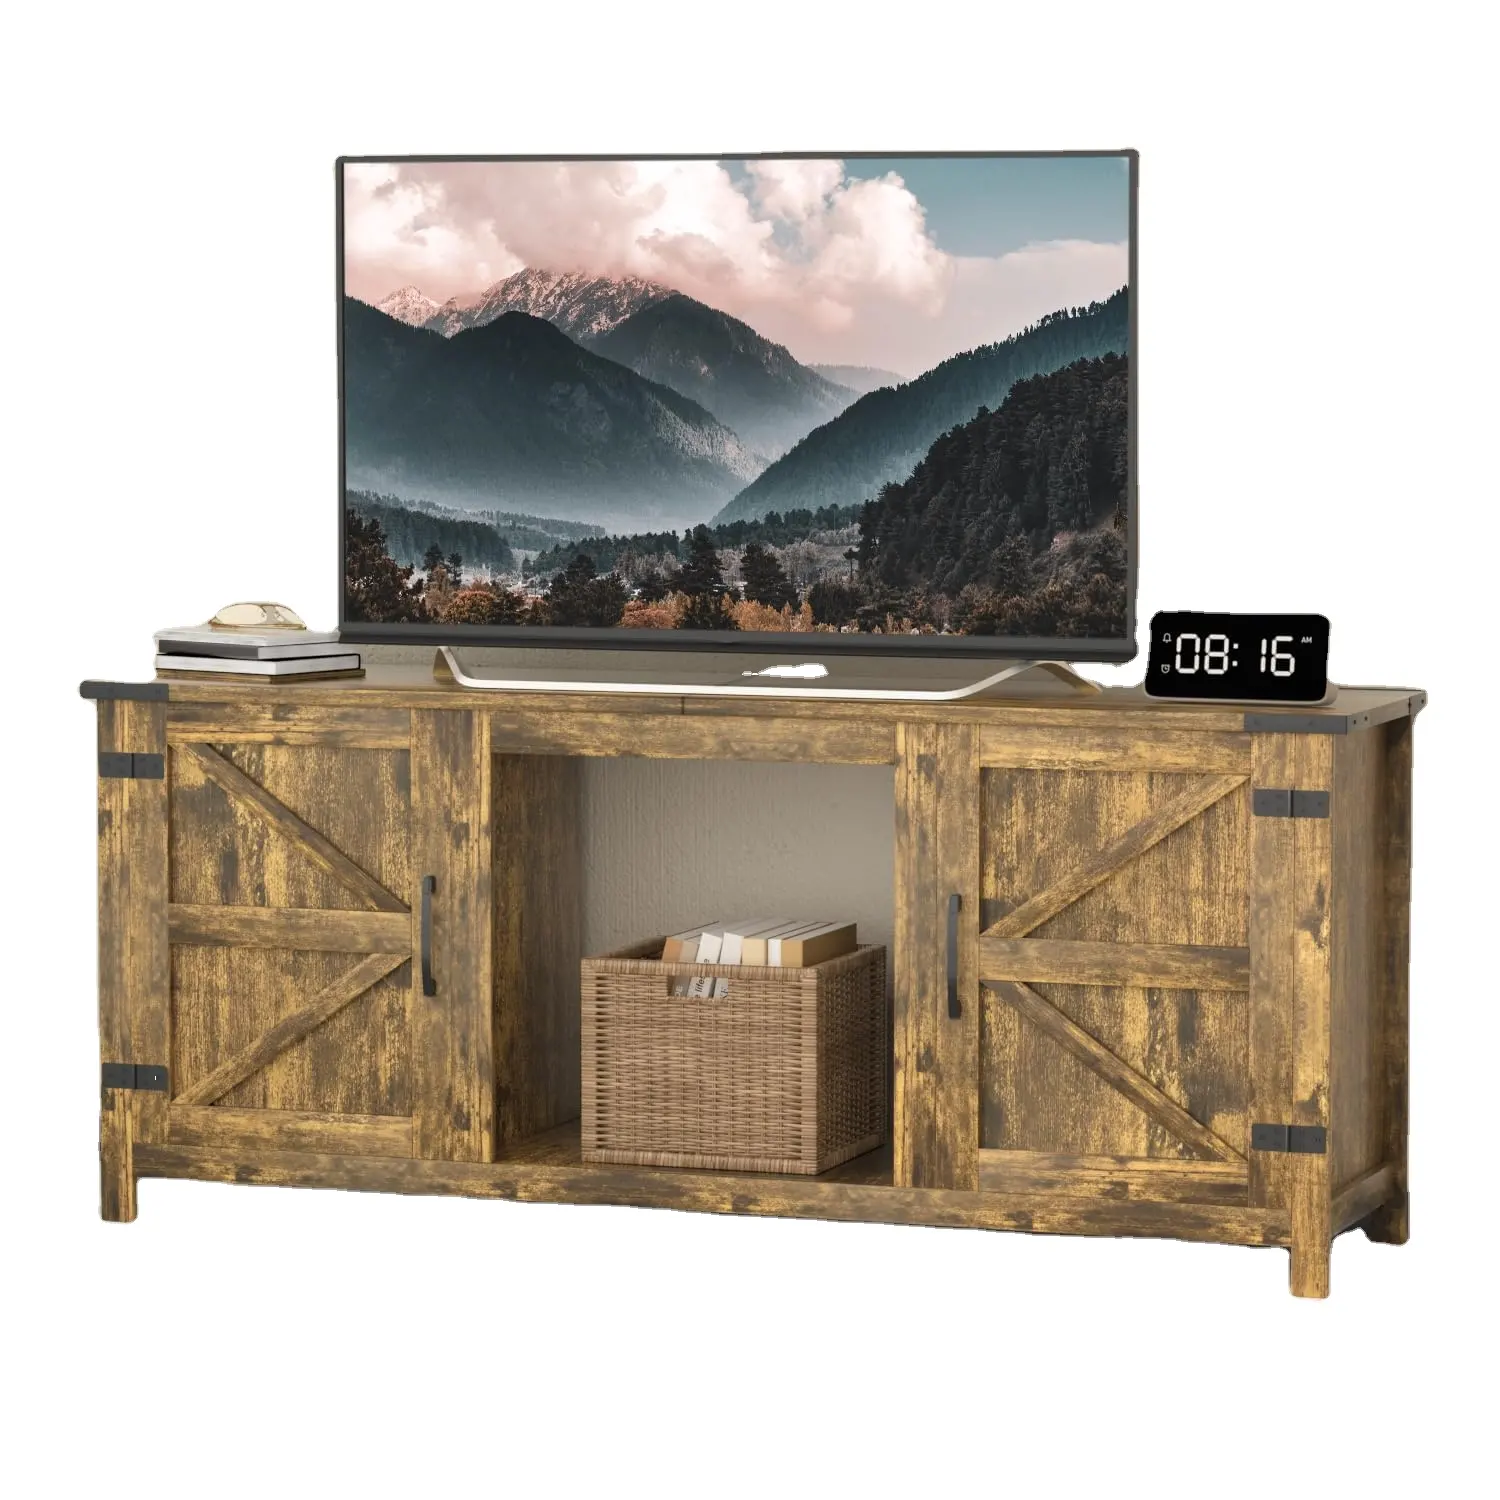 Çiftlik ahır kapıları TV standı kabine konsol ile 65 inç kadar TV için depolama dolabı modern tasarım